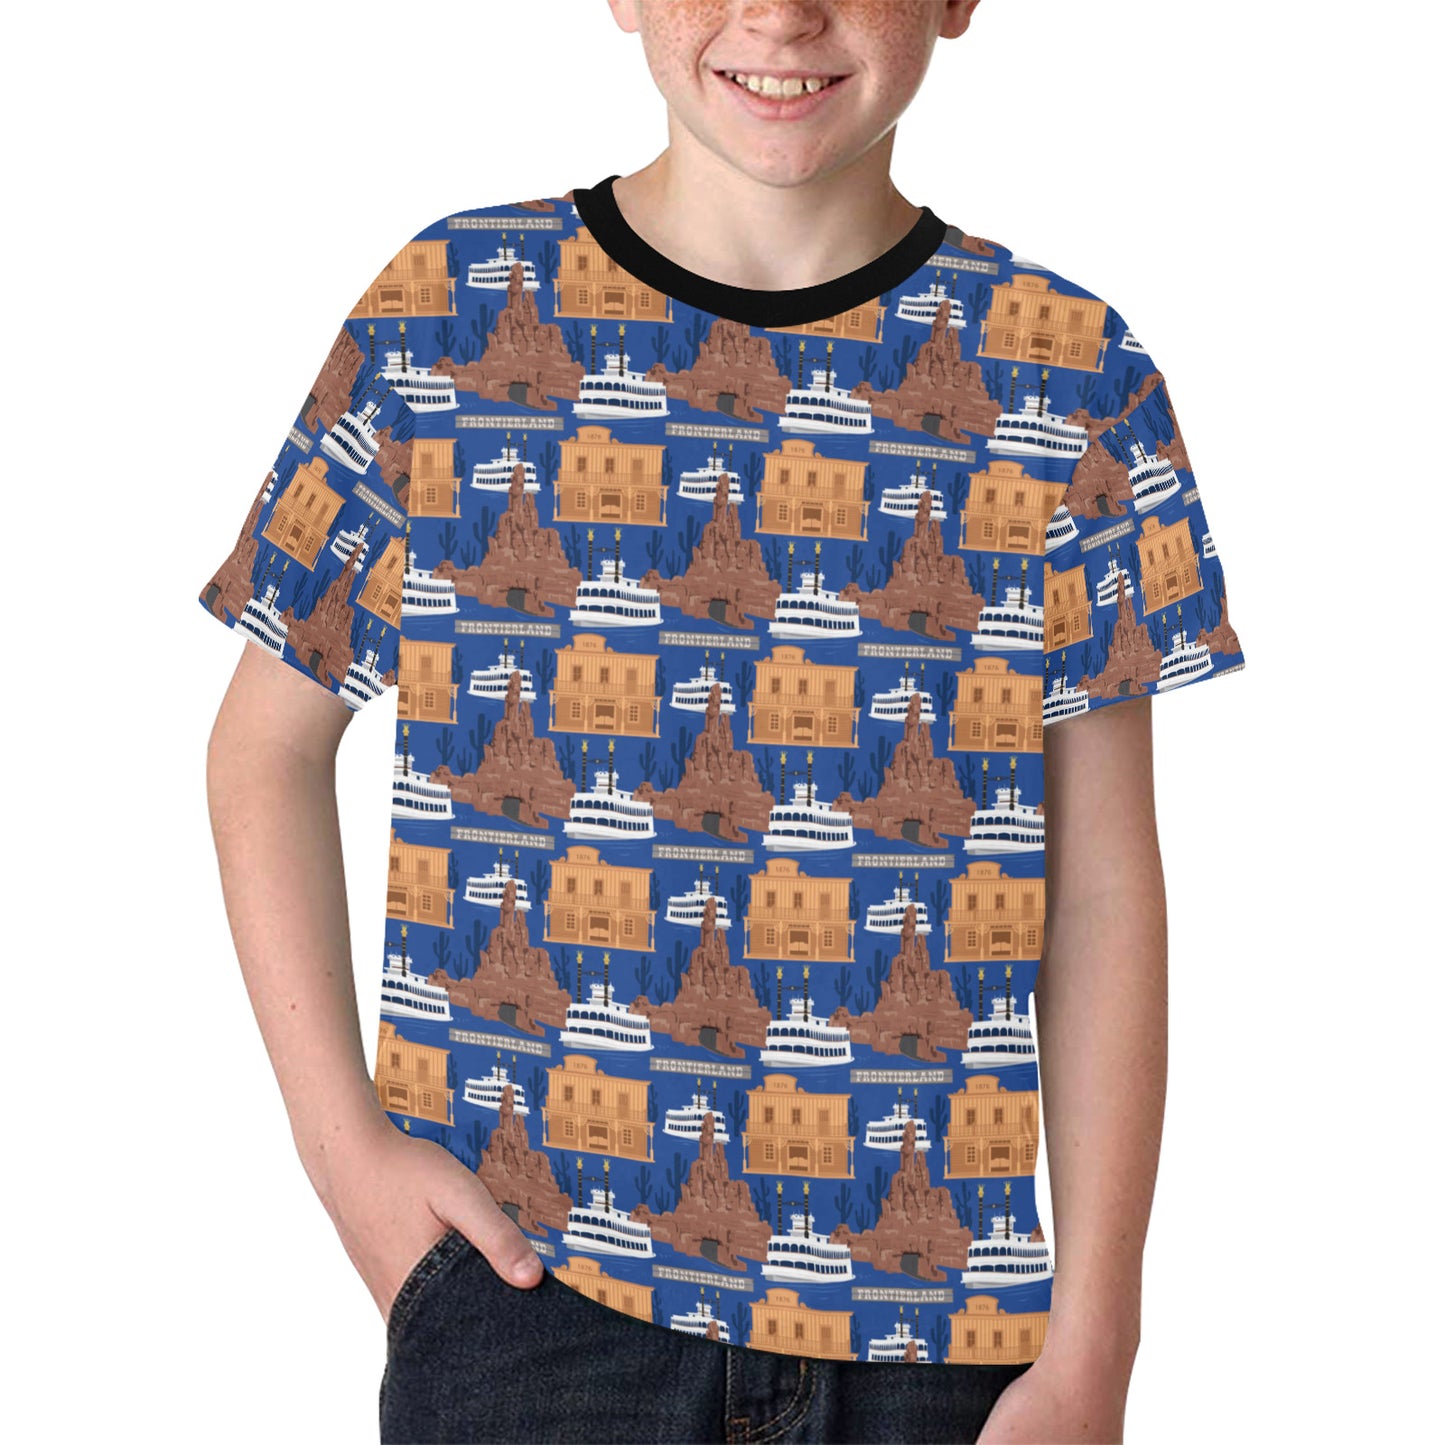 Frontierland Kids' T-shirt